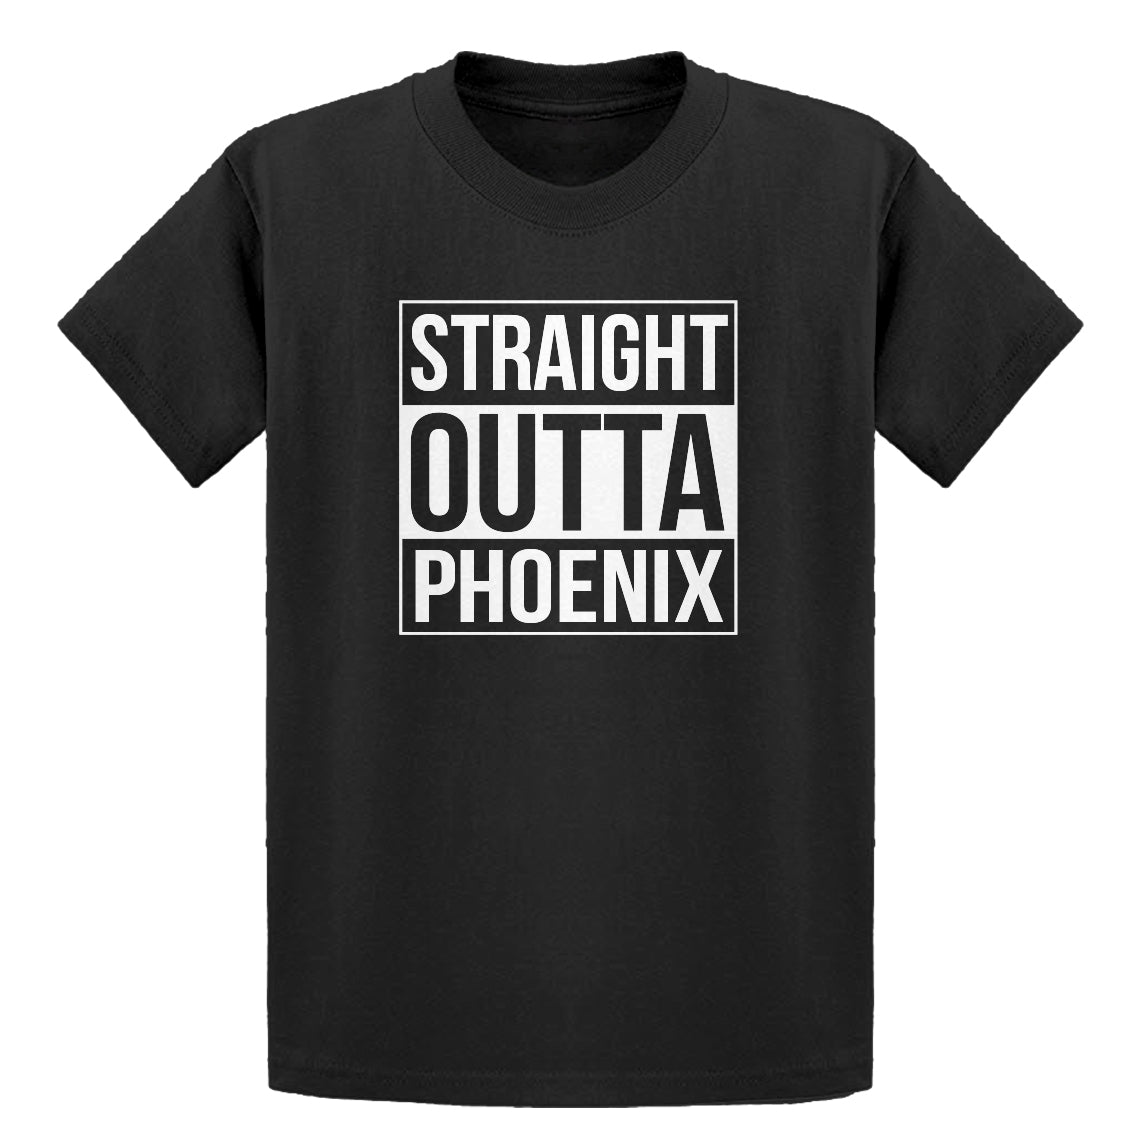 Youth Straight Outta Phoenix Kids T-shirt